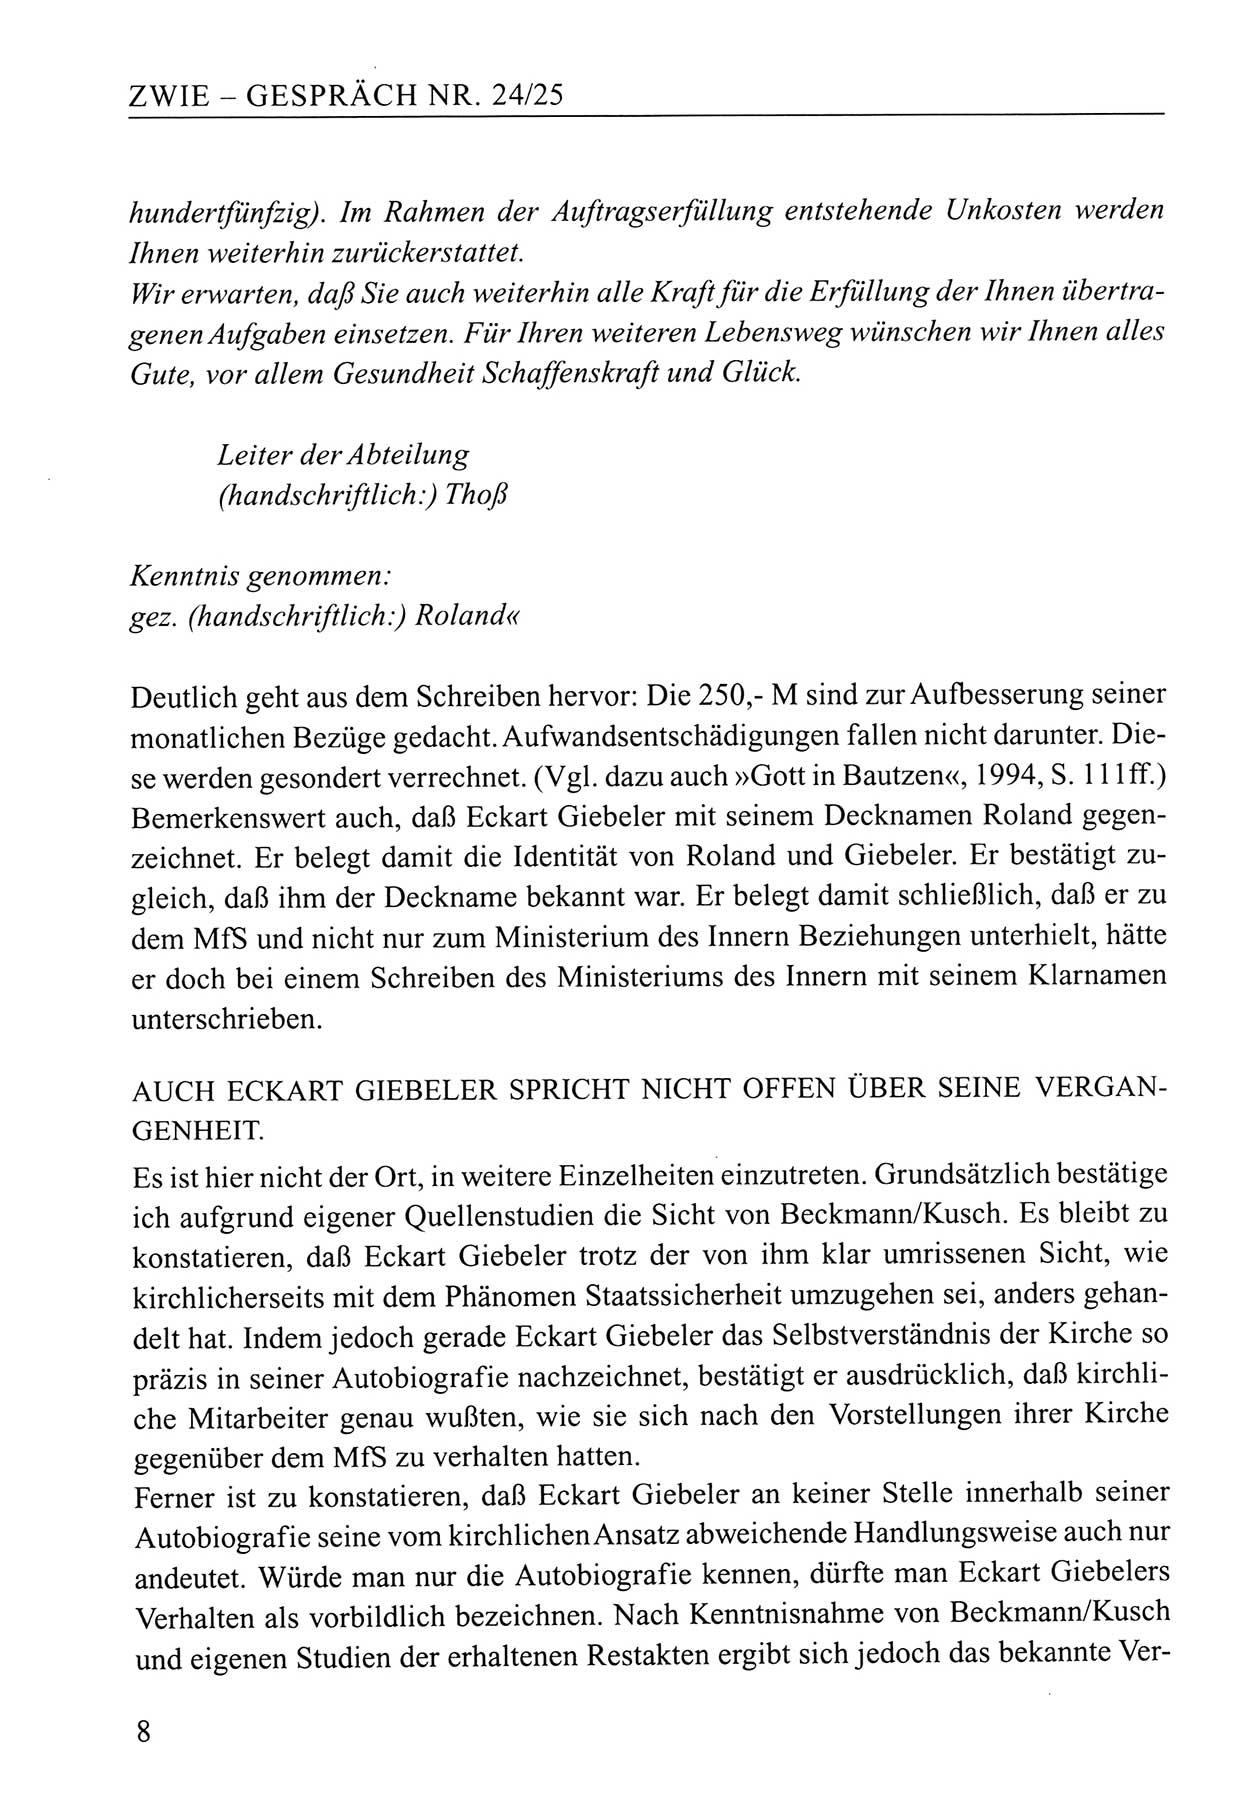 Zwie-Gespräch, Beiträge zum Umgang mit der Staatssicherheits-Vergangenheit [Deutsche Demokratische Republik (DDR)], Ausgabe Nr. 24/25, Berlin 1994, Seite 8 (Zwie-Gespr. Ausg. 24/25 1994, S. 8)